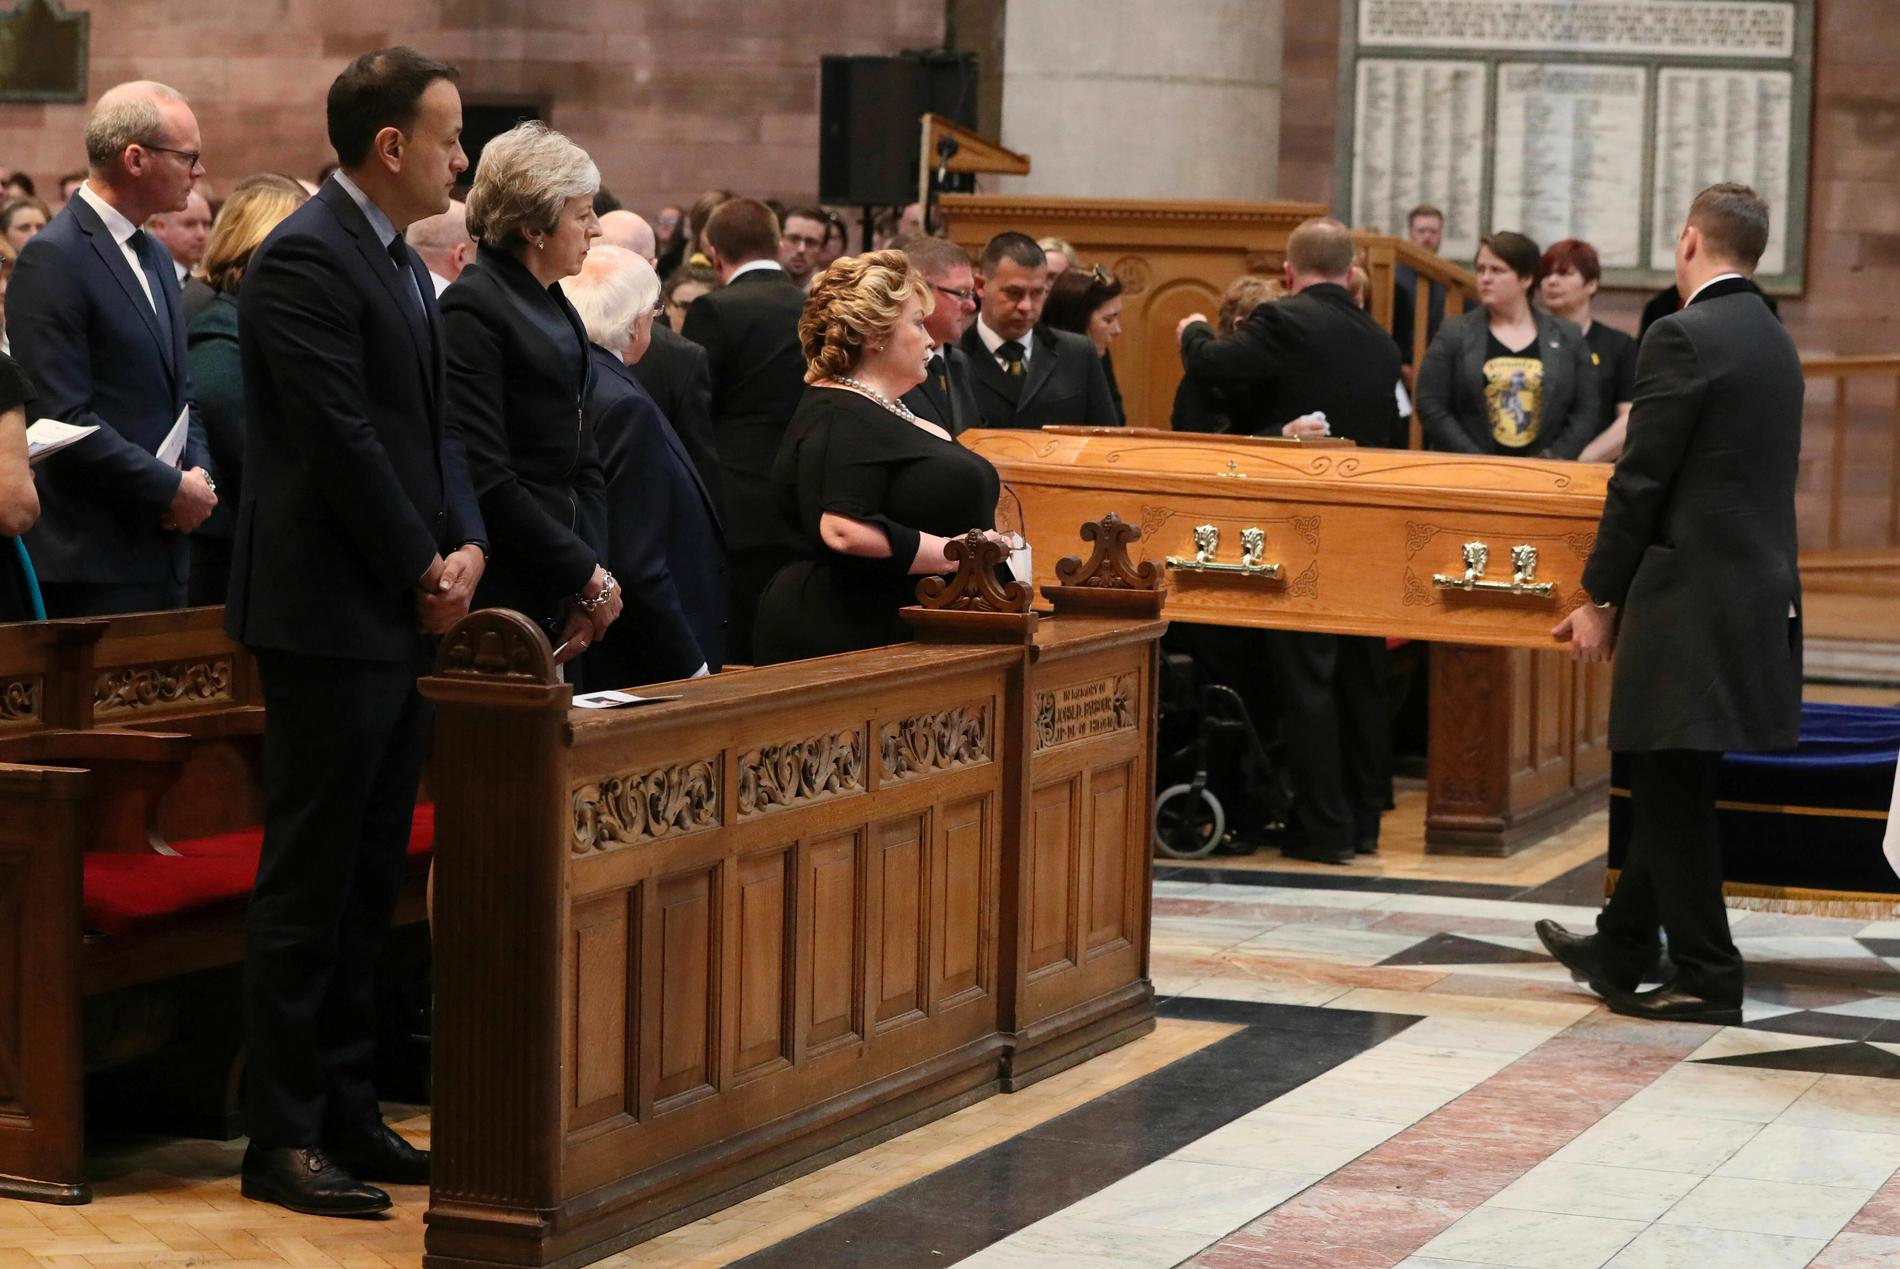 Irlands dåvarande premiärminister Leo Varadkar och Storbritannens dåvarande premiärminister Theresa May vid begravningen av den mördade journalisten Lyra McKee i Belfast 2019. Arkivbild.